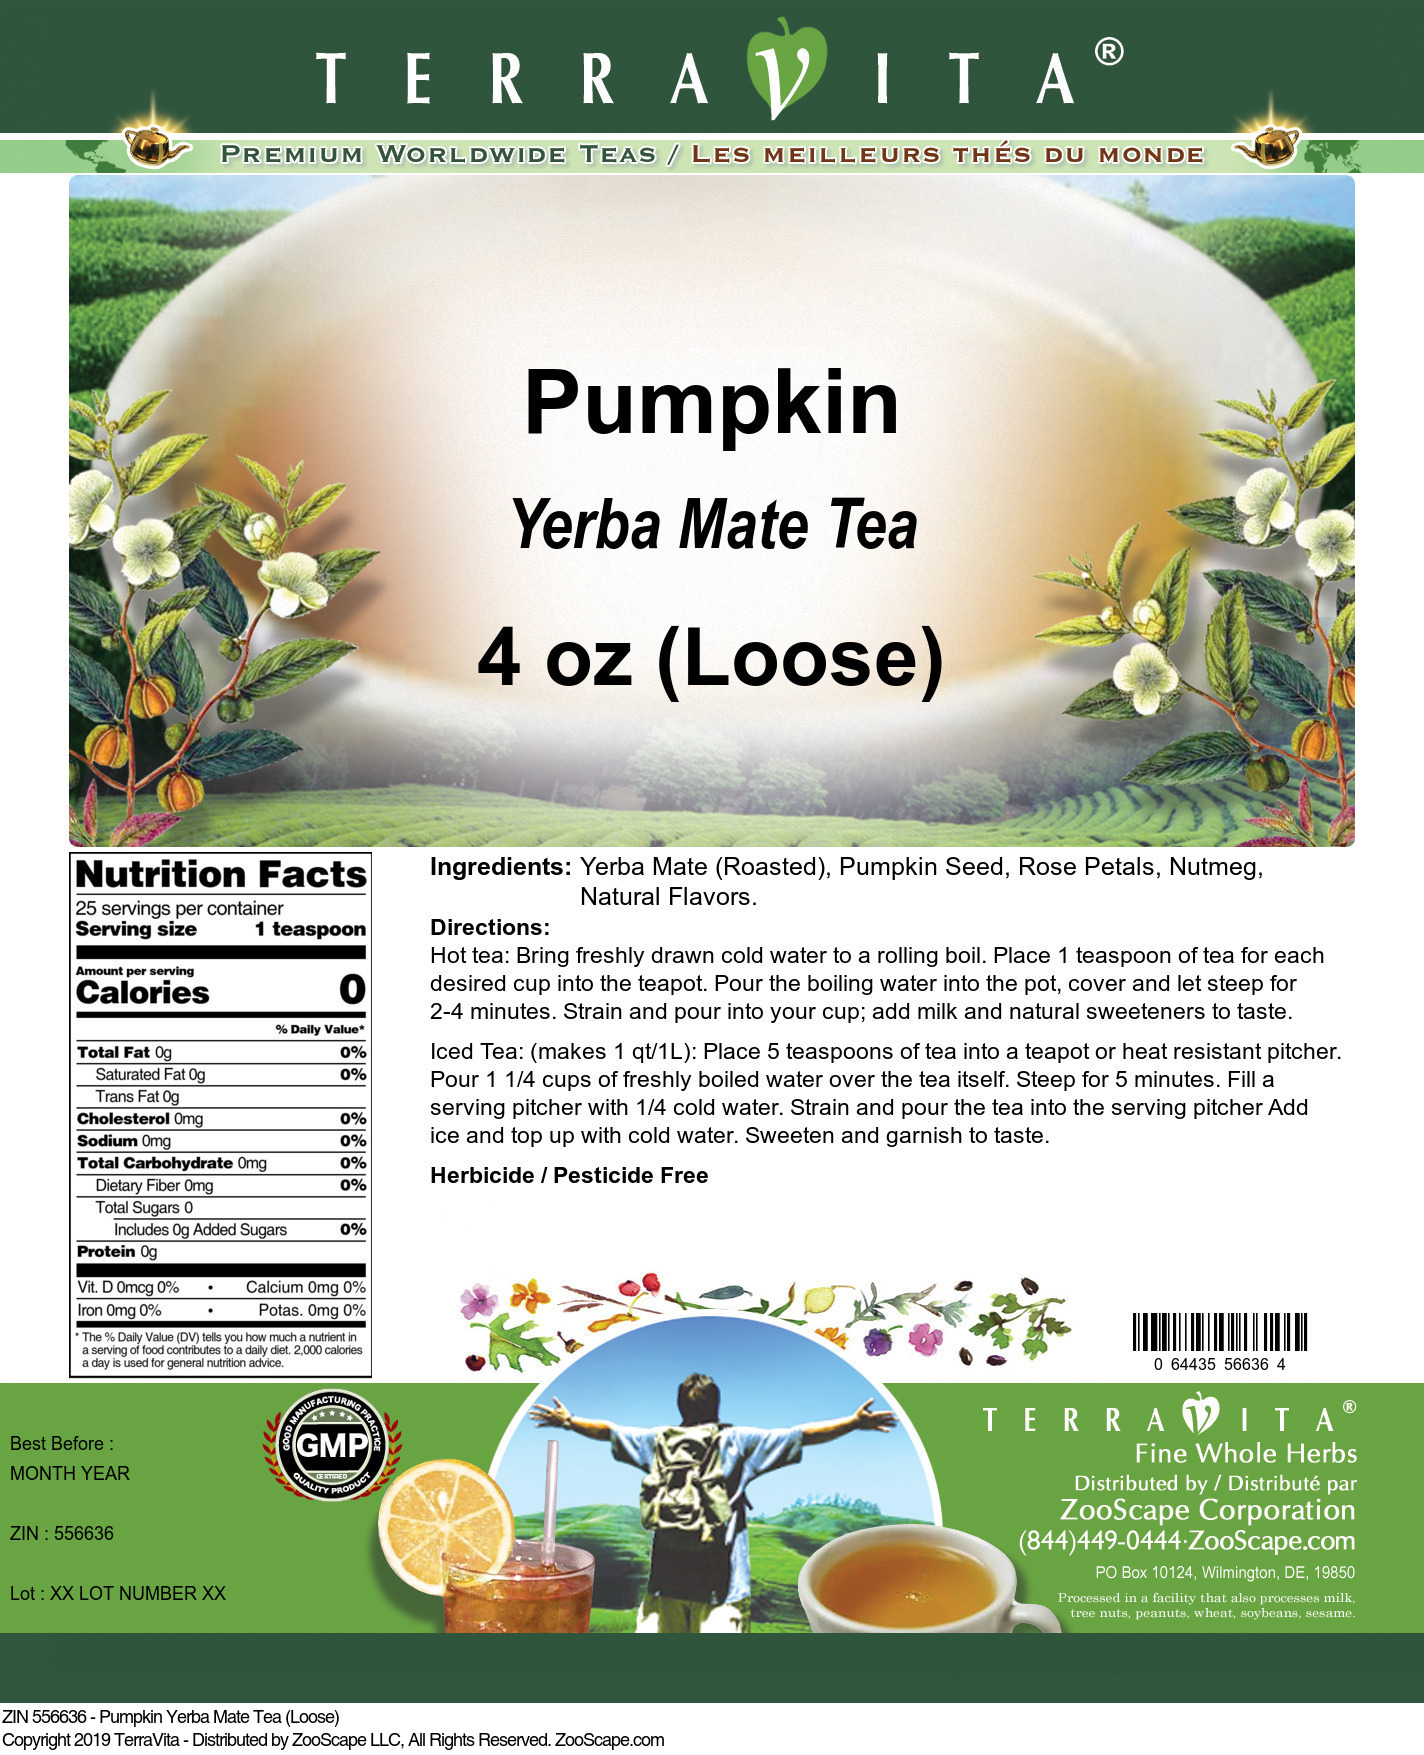 Pumpkin Yerba Mate Tea (Loose) - Label